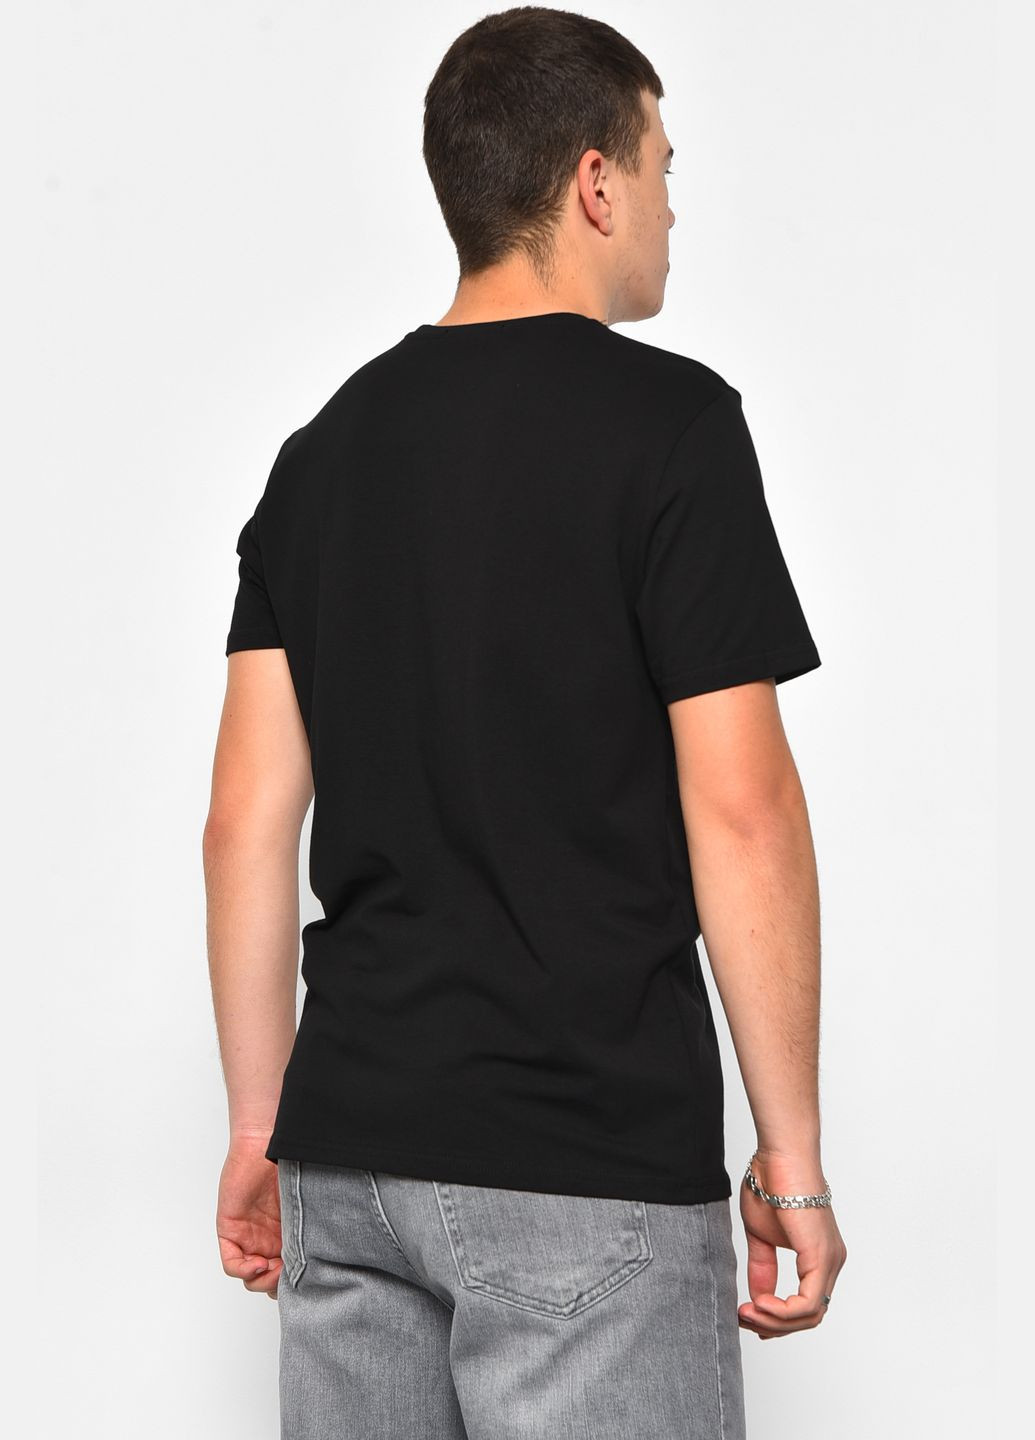 Черная футболка мужская полубатальная черного цвета Let's Shop